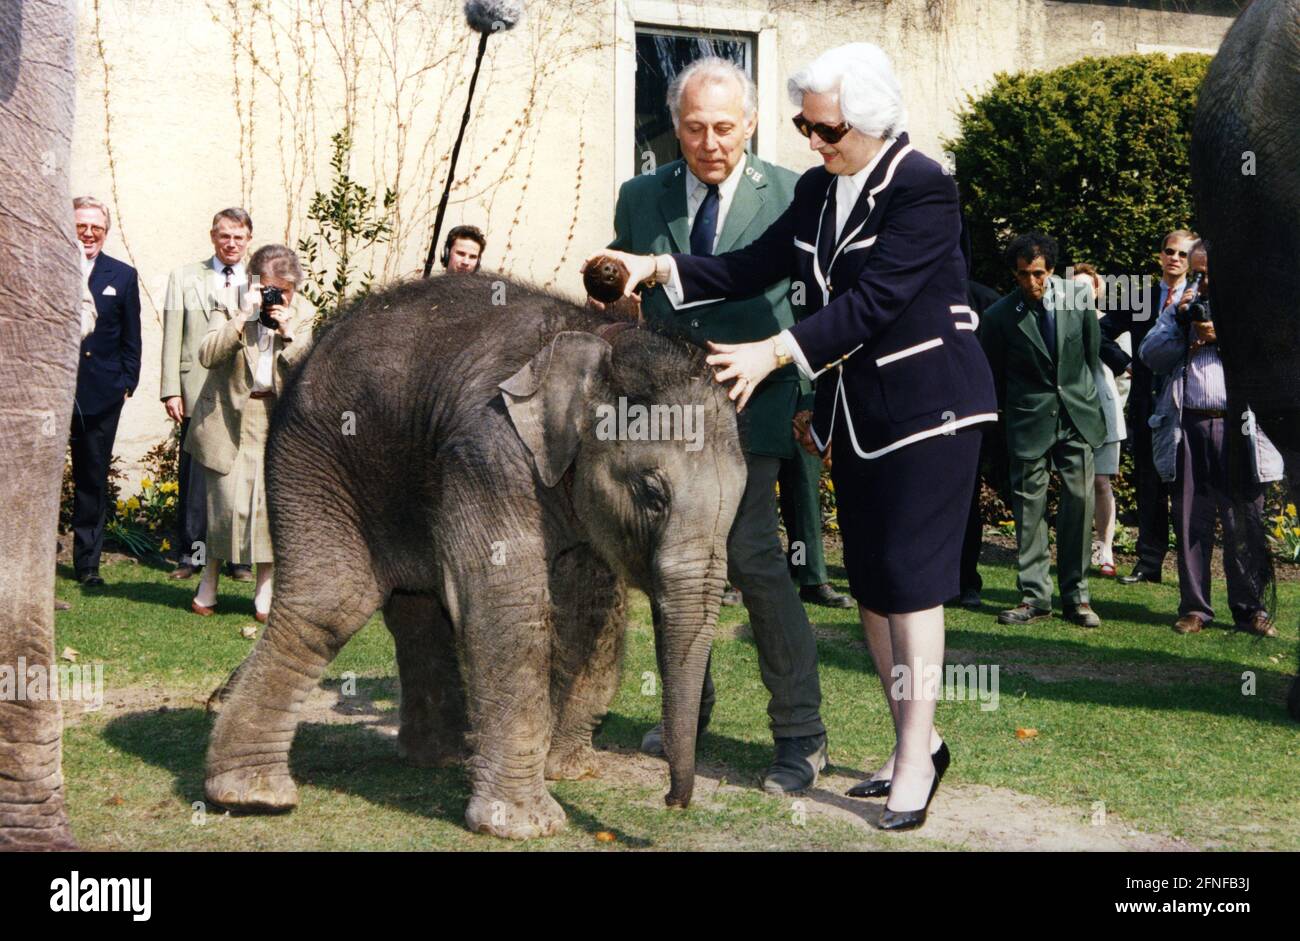 Christiane Herzog, épouse du président allemand Roman Herzog, baptise un jeune éléphant d'Asie, fils de Thura, Tharun, avec du lait de noix de coco au zoo de Hagenbeck à Hambourg. [traduction automatique] Banque D'Images